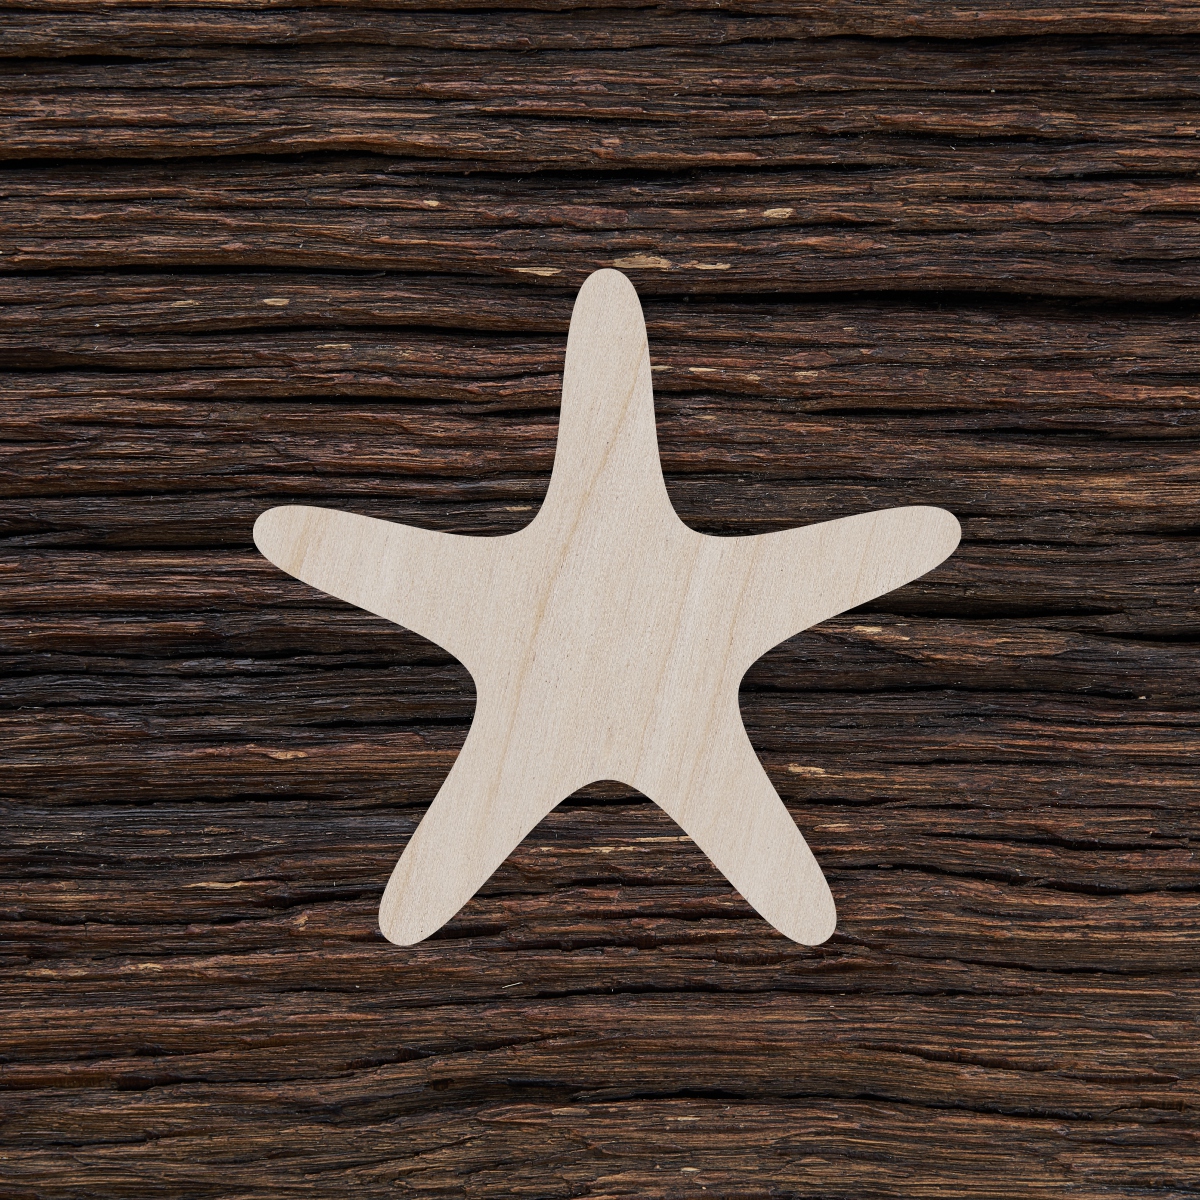 6Jūrų žvaigždė - medinis gaminys, pjautas lazeriu - dekoravimui ir dažymui